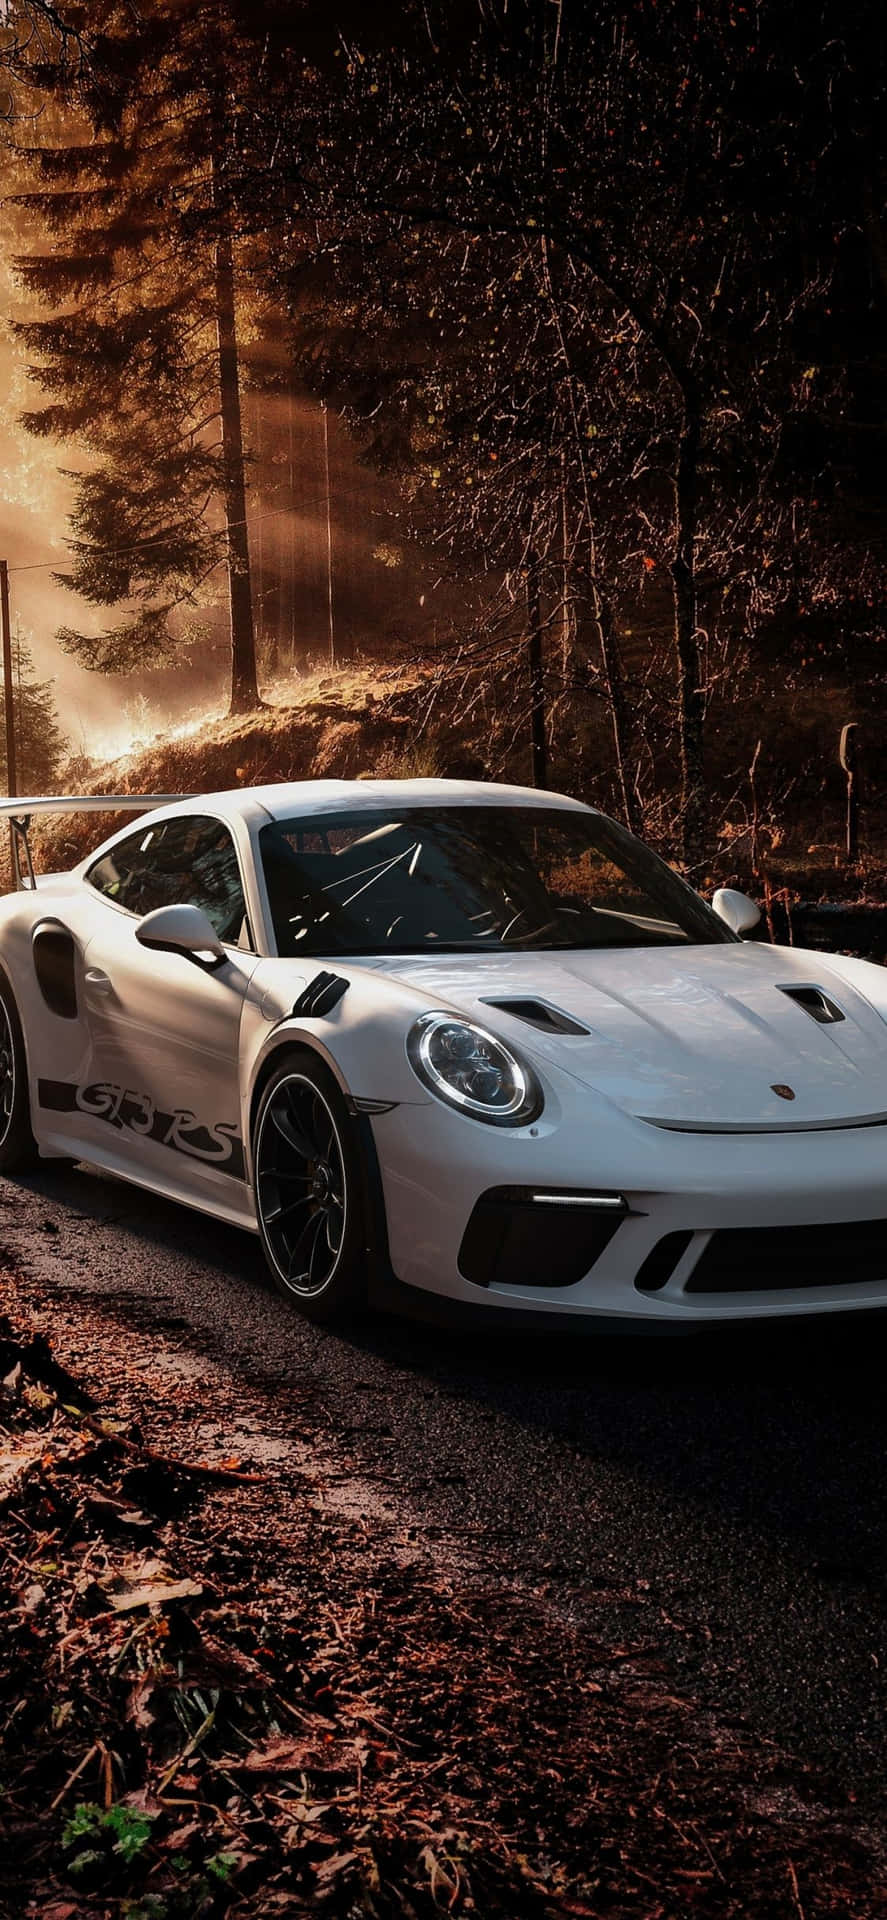 Stunning Porsche iPhone Wallpaper Wallpaper